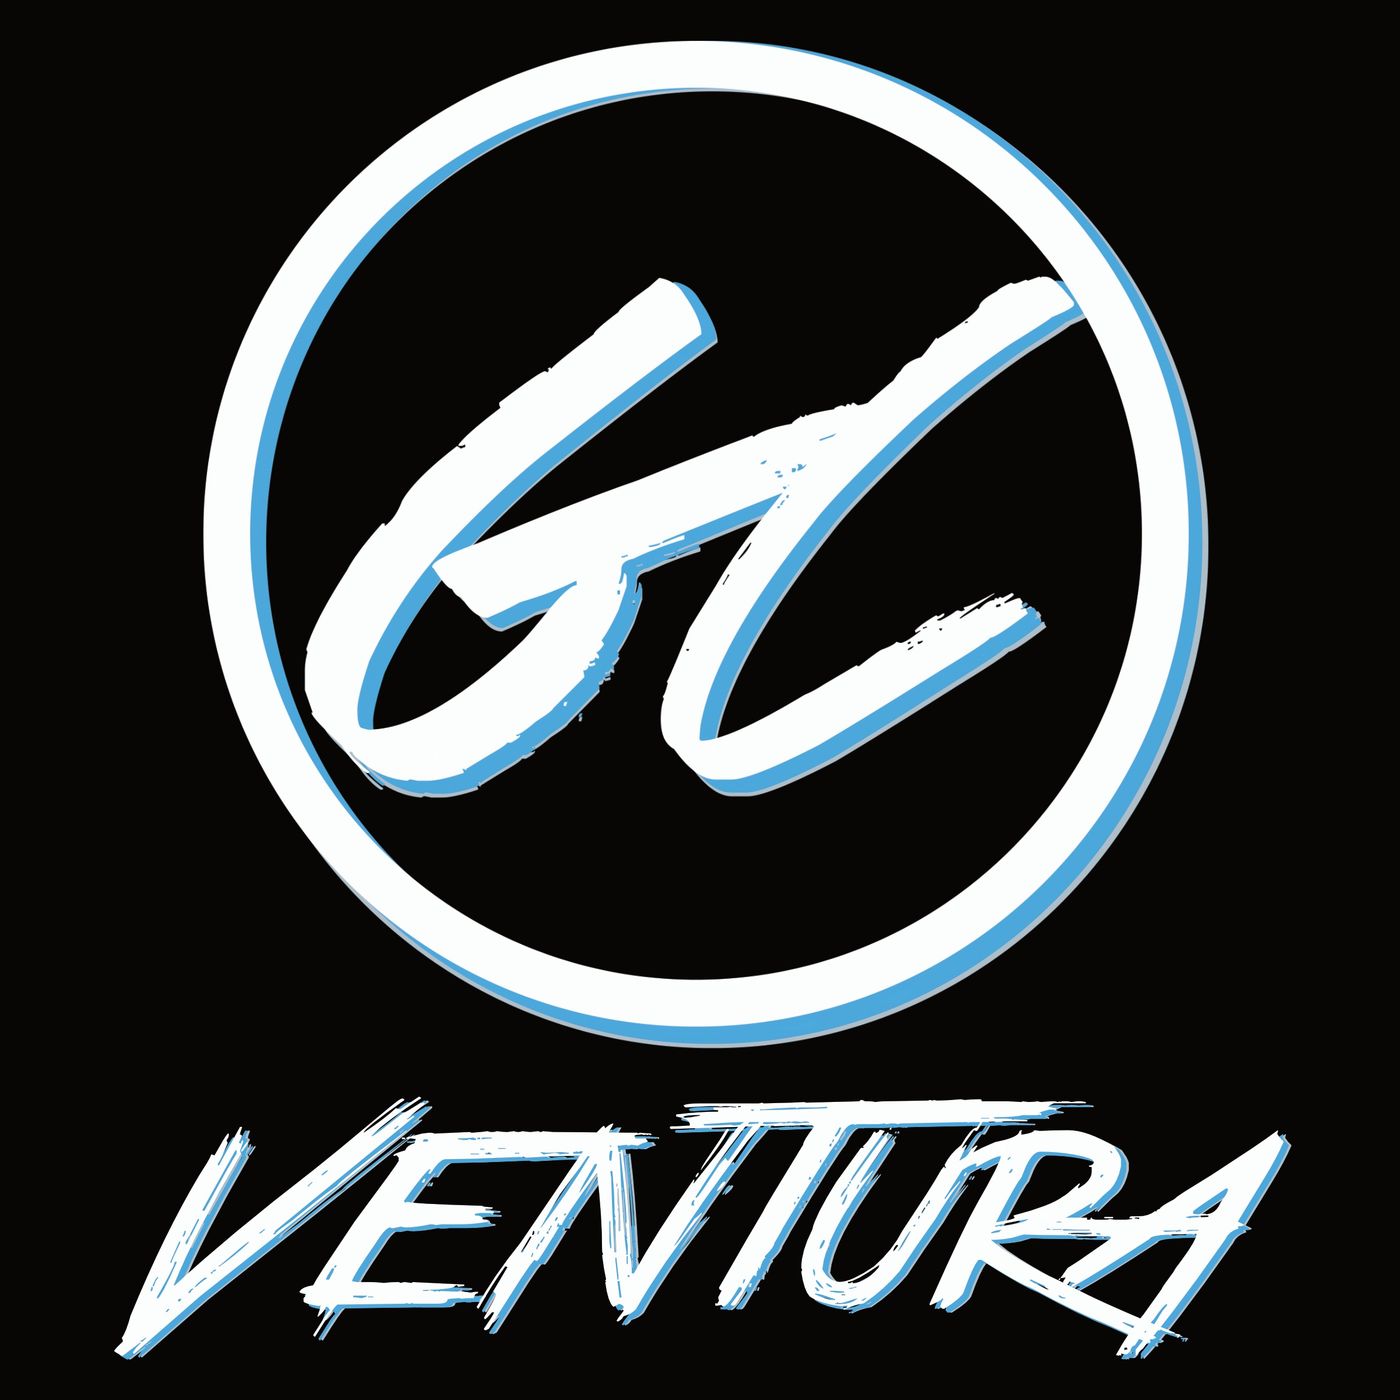 GC Ventura